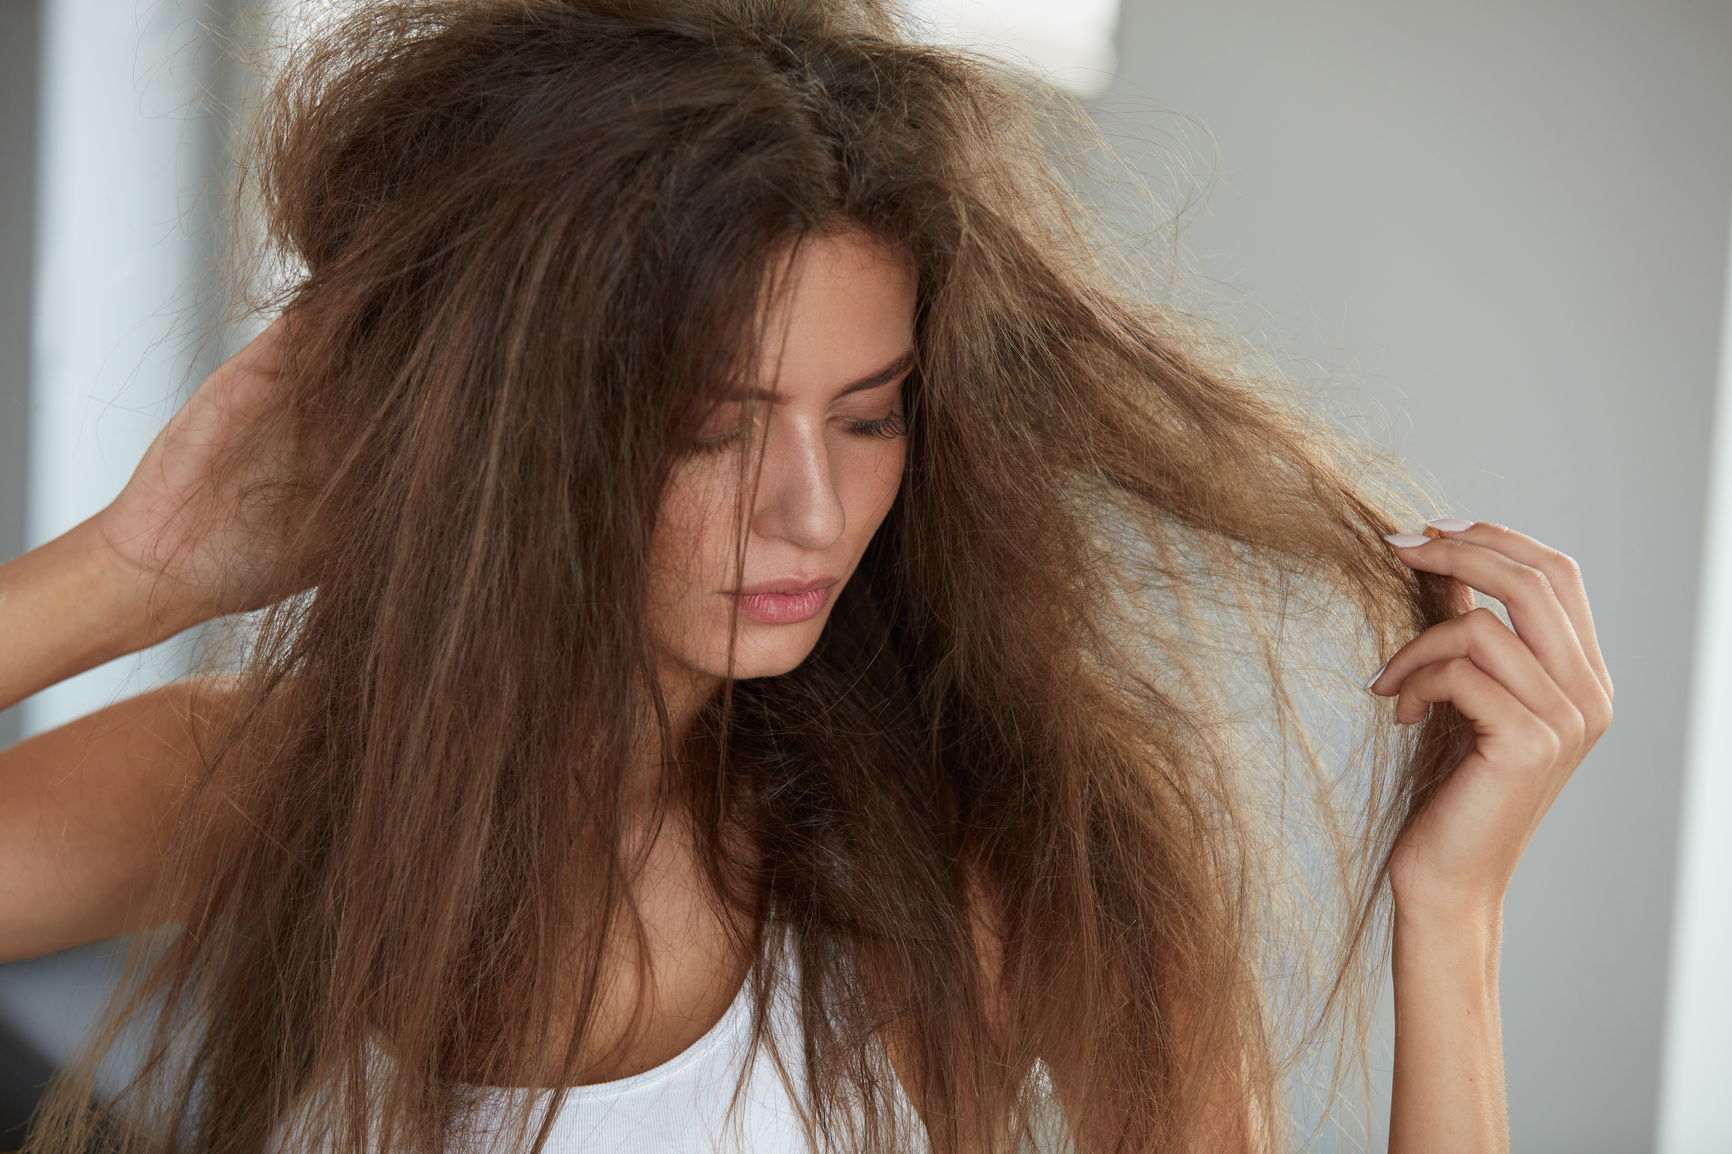 Tørt, sprøtt hår er ikke det man først forbinder med velvære.